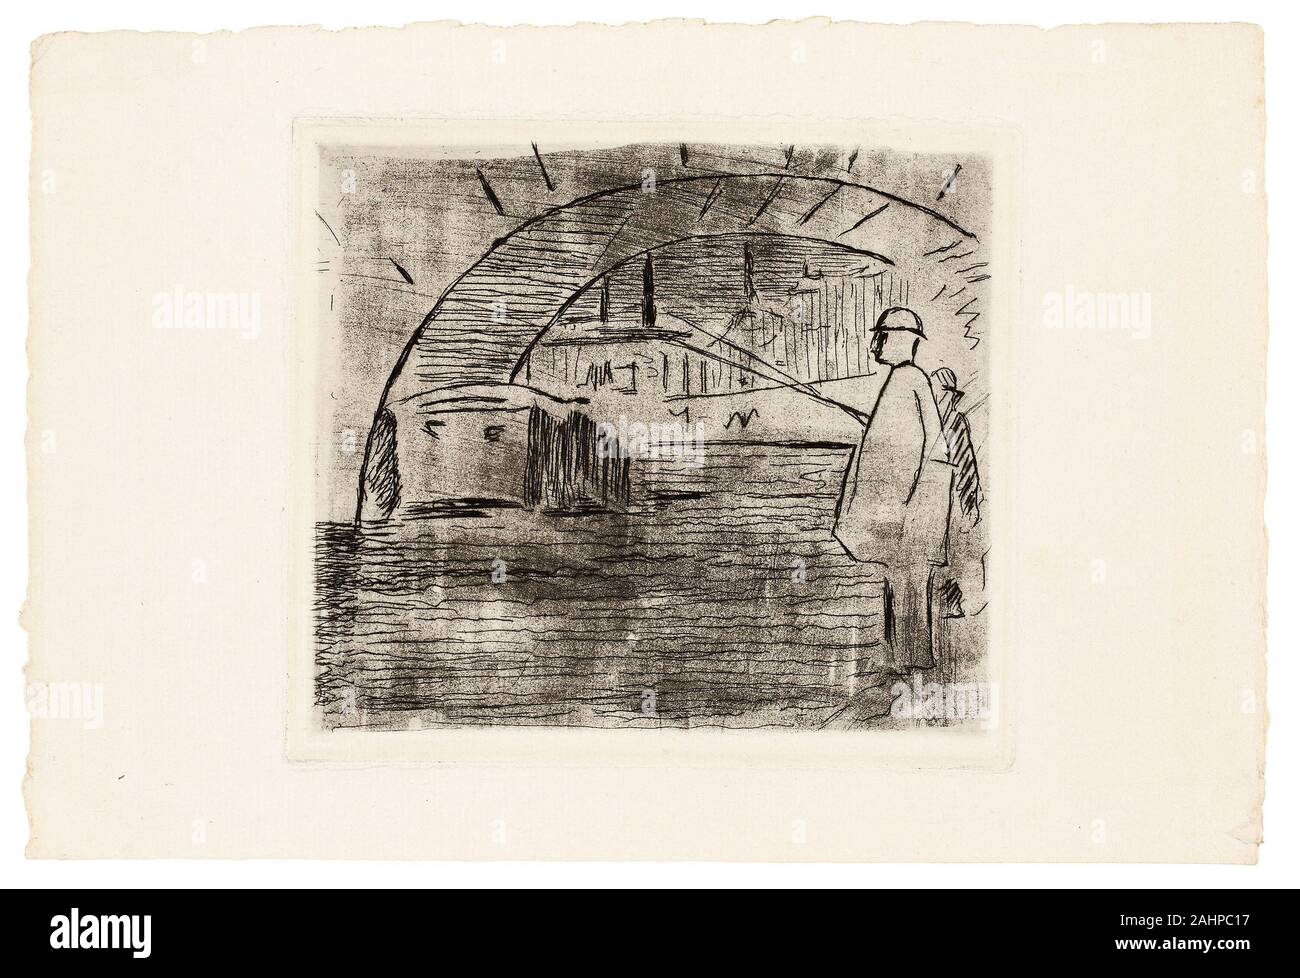 Édouard Manet. El arco del puente. 1874. Francia. Aguafuerte y Aguatinta en negro sobre papel establecido de marfil Foto de stock